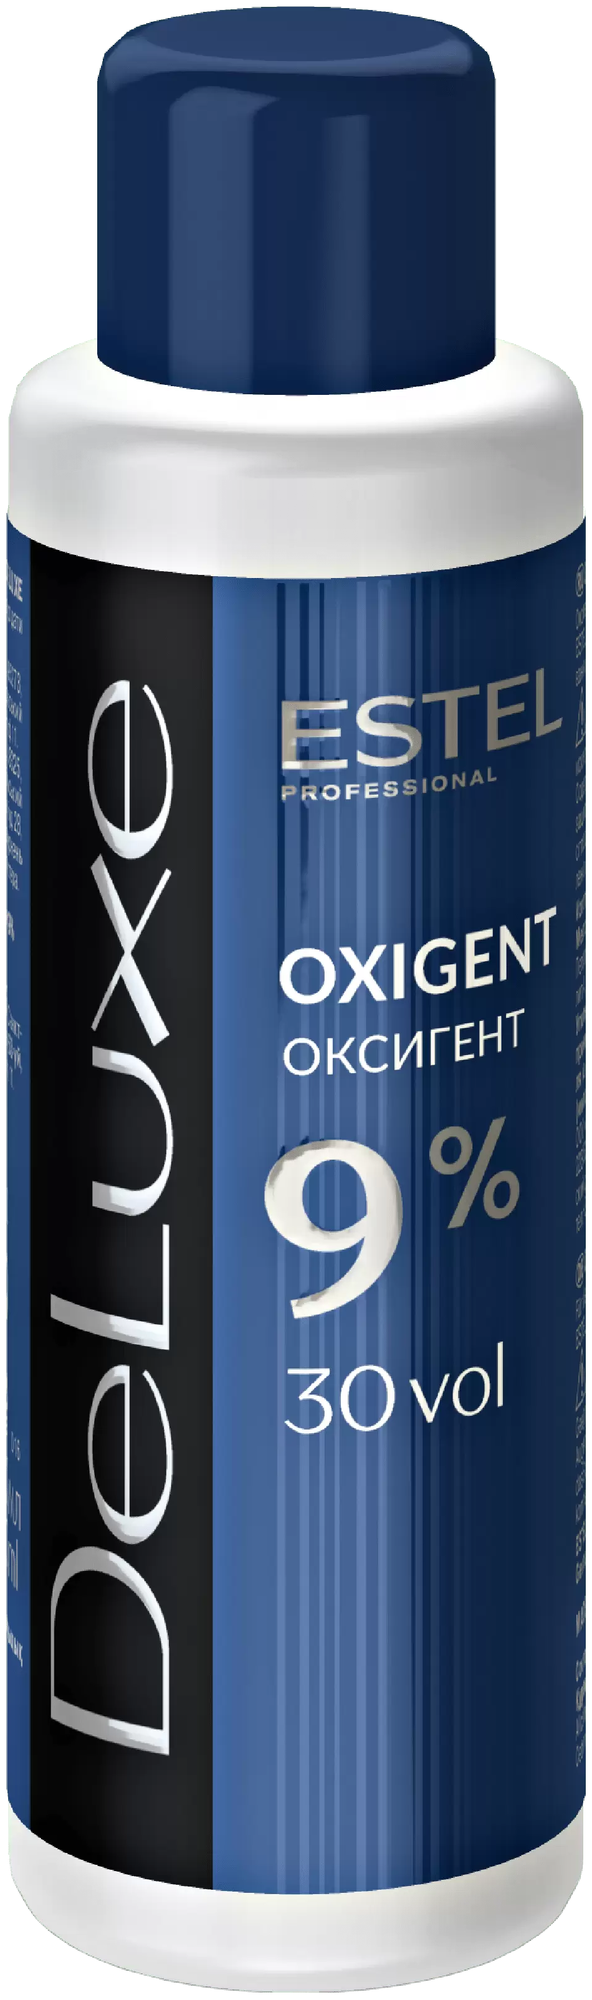 Estel Оксигент 9%, 1000 мл (Estel, De Luxe) - фото №1